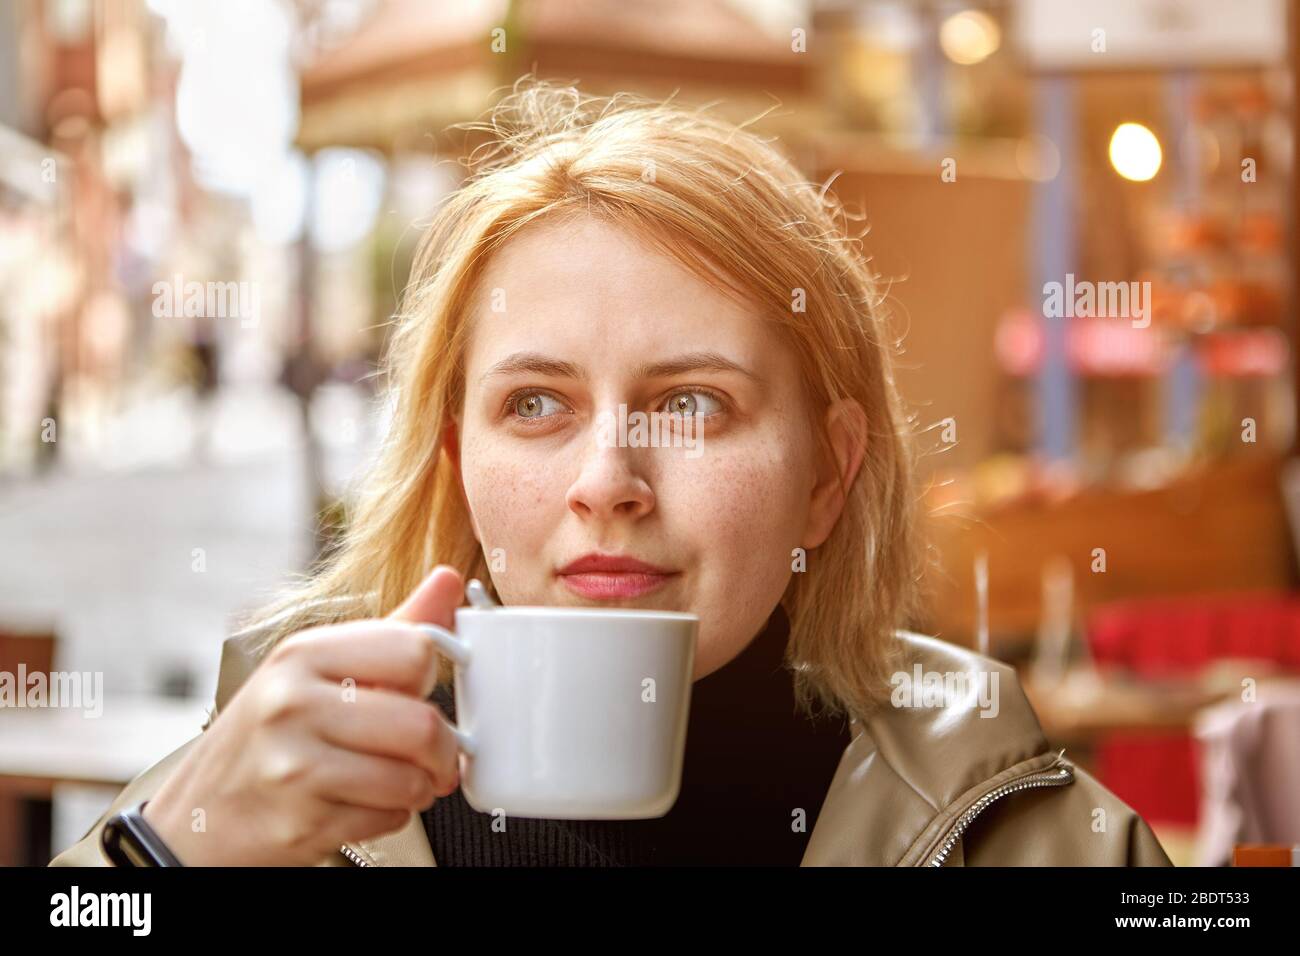 Une jeune femme blanche caucasienne aux cheveux blonds est assise dans le café extérieur avec une petite tasse de café dans ses mains. Banque D'Images